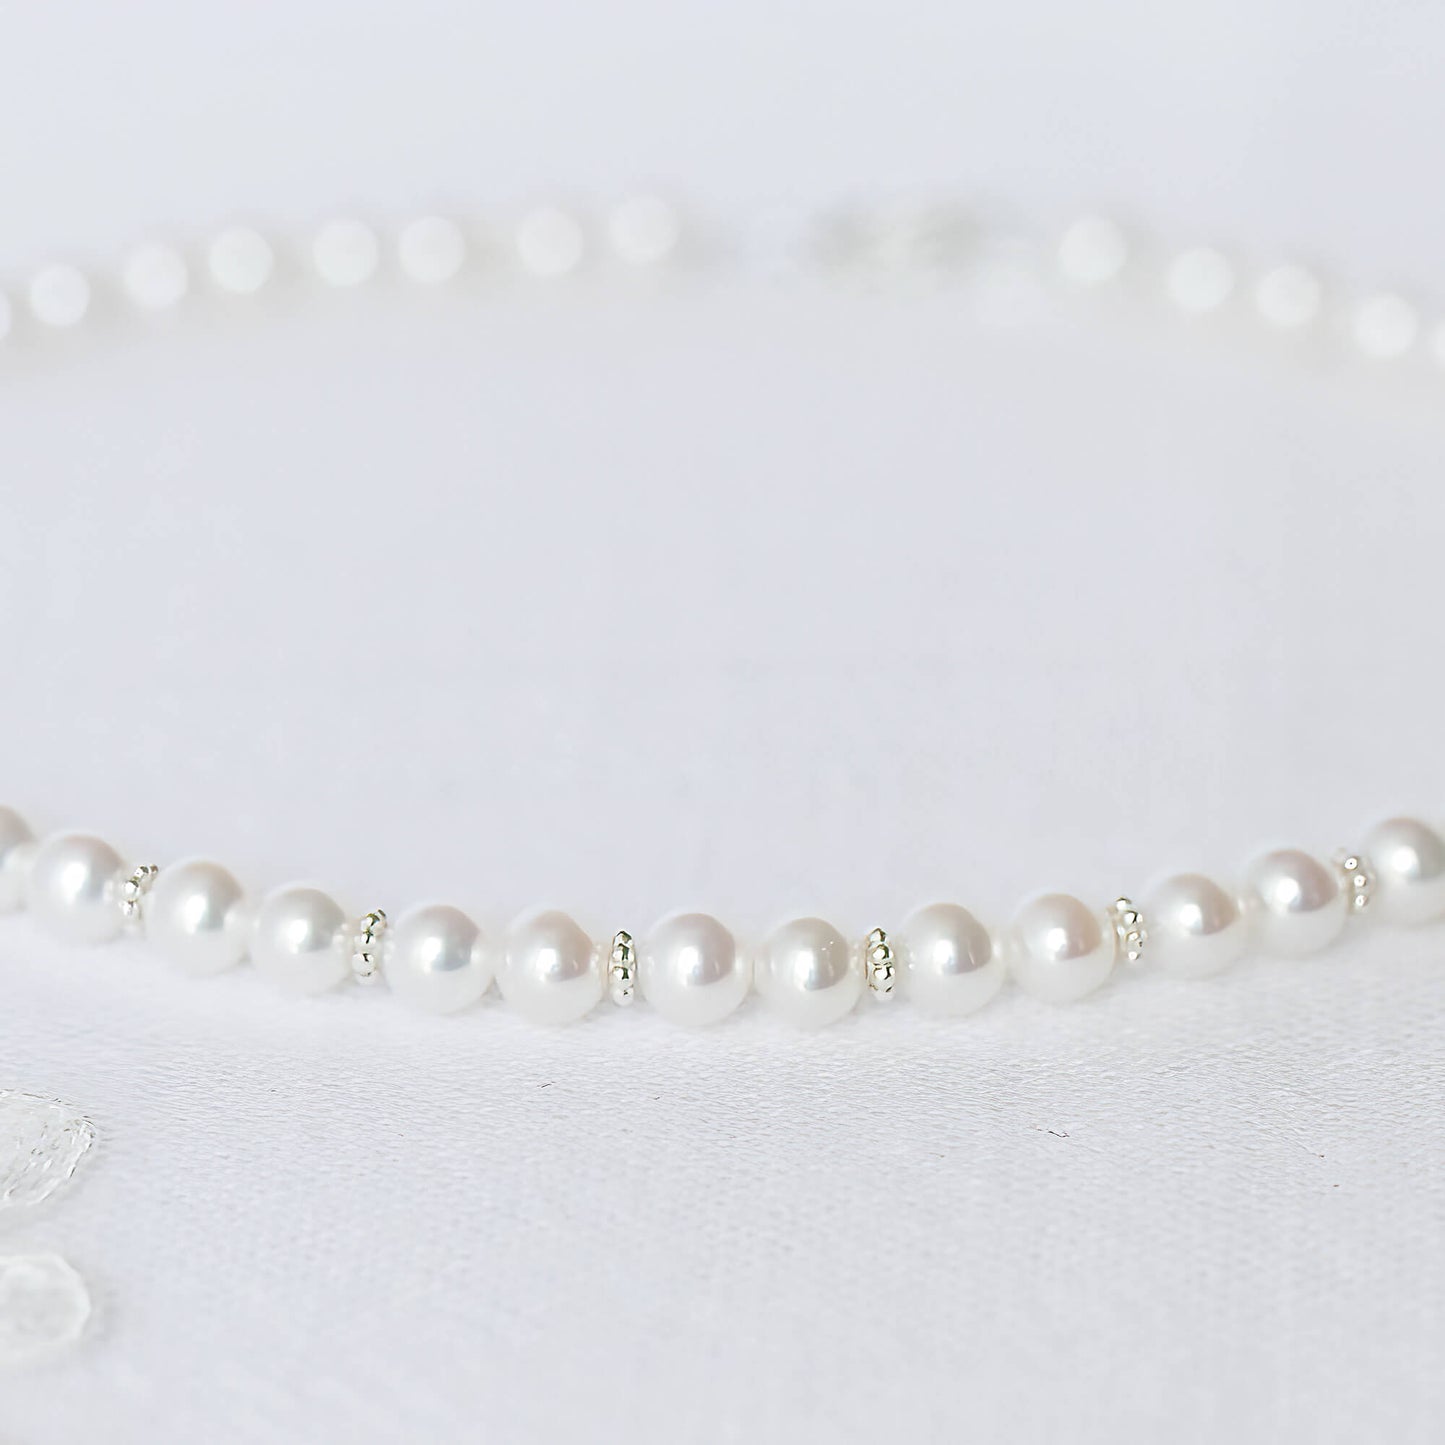 Precious Pearls Necklace